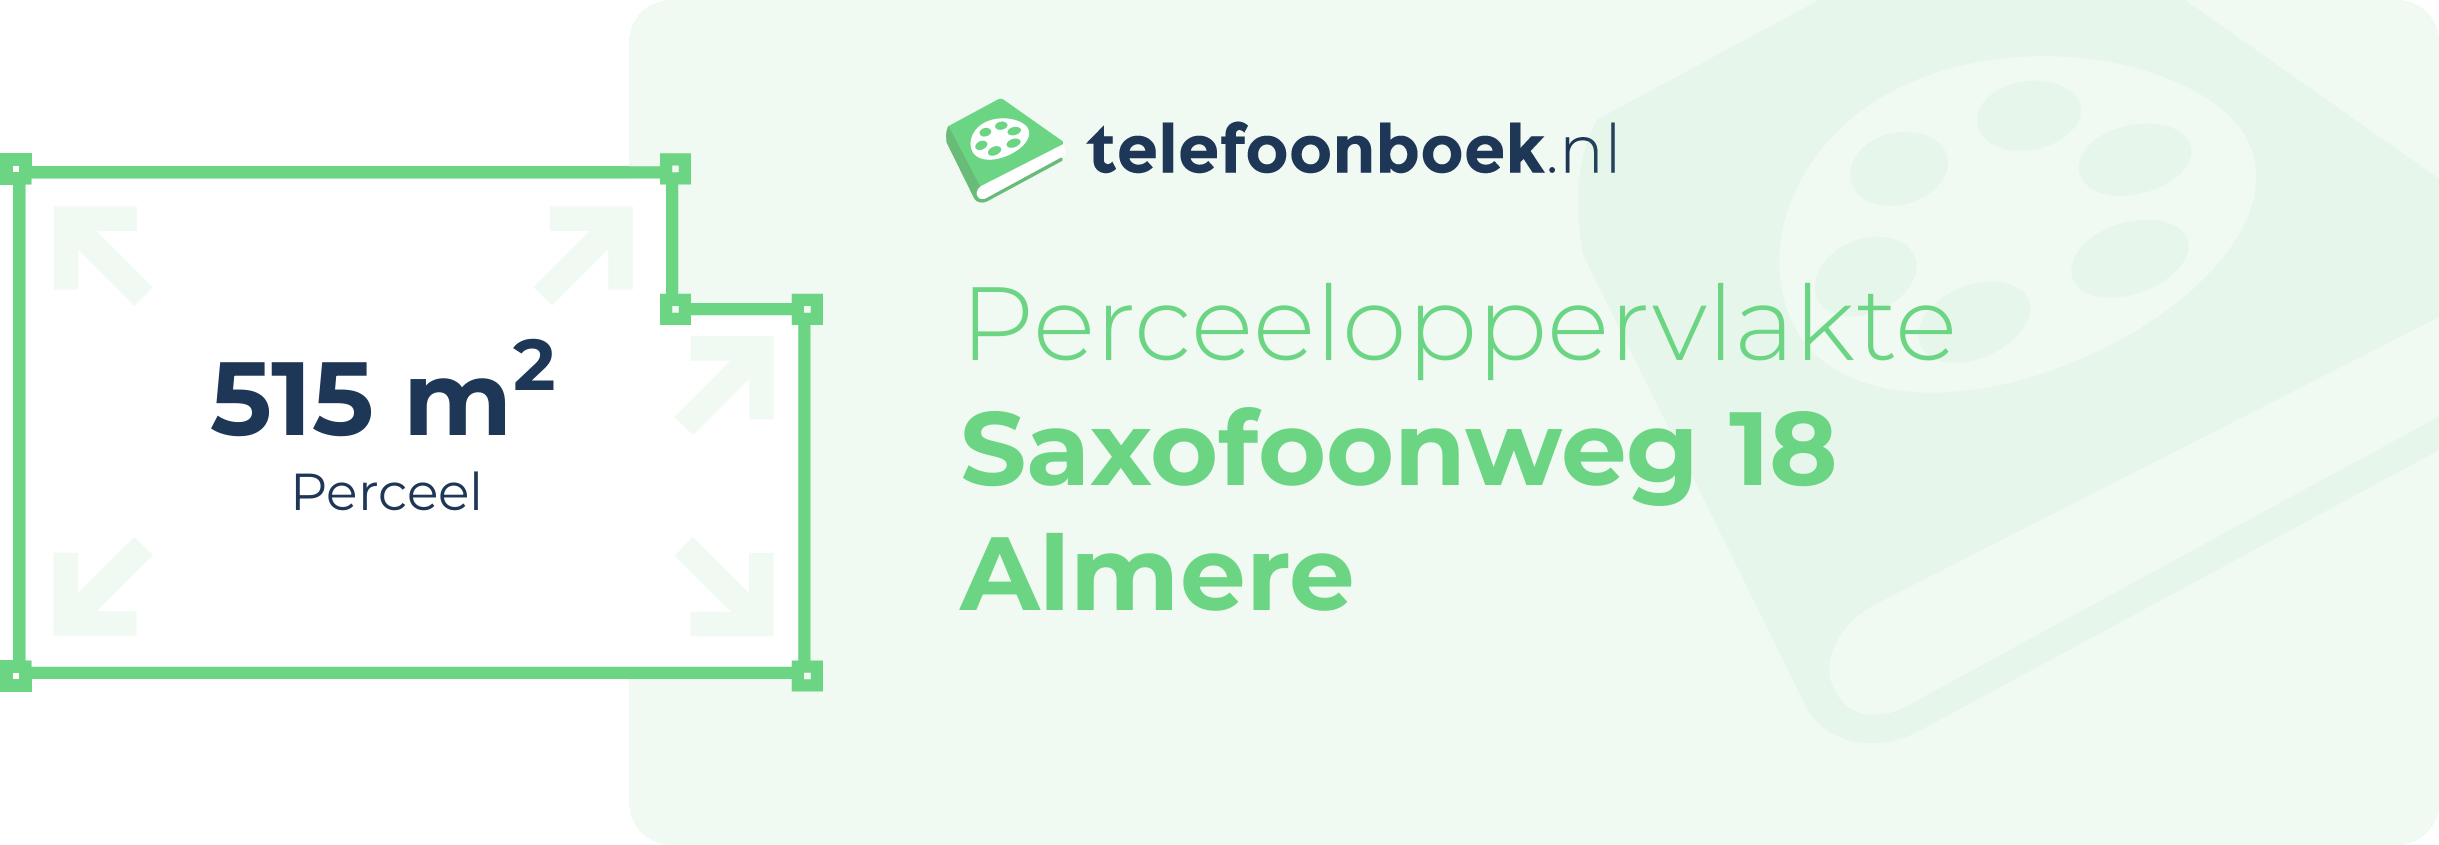 Perceeloppervlakte Saxofoonweg 18 Almere